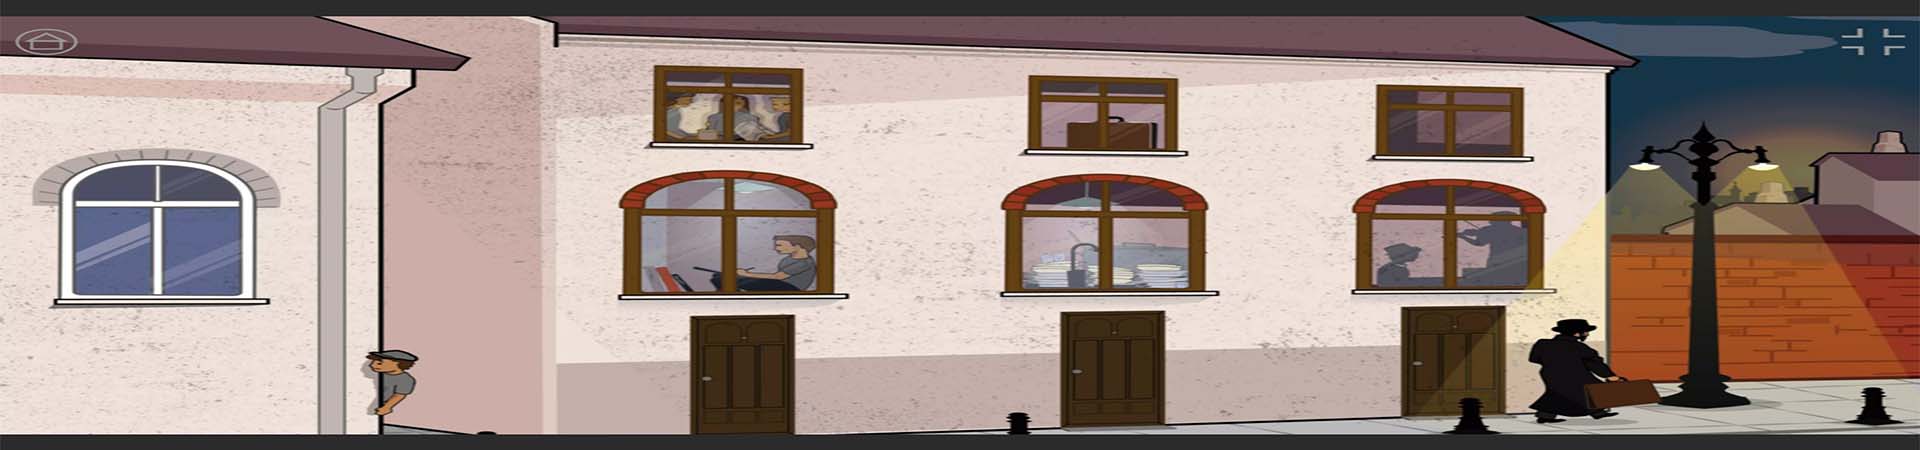 קיר בניין ברחוב הגטו ובכל חלון מיצג המסמל אספקט מהחיים בגטו - ילד כותב, כלים בכיור ועוד